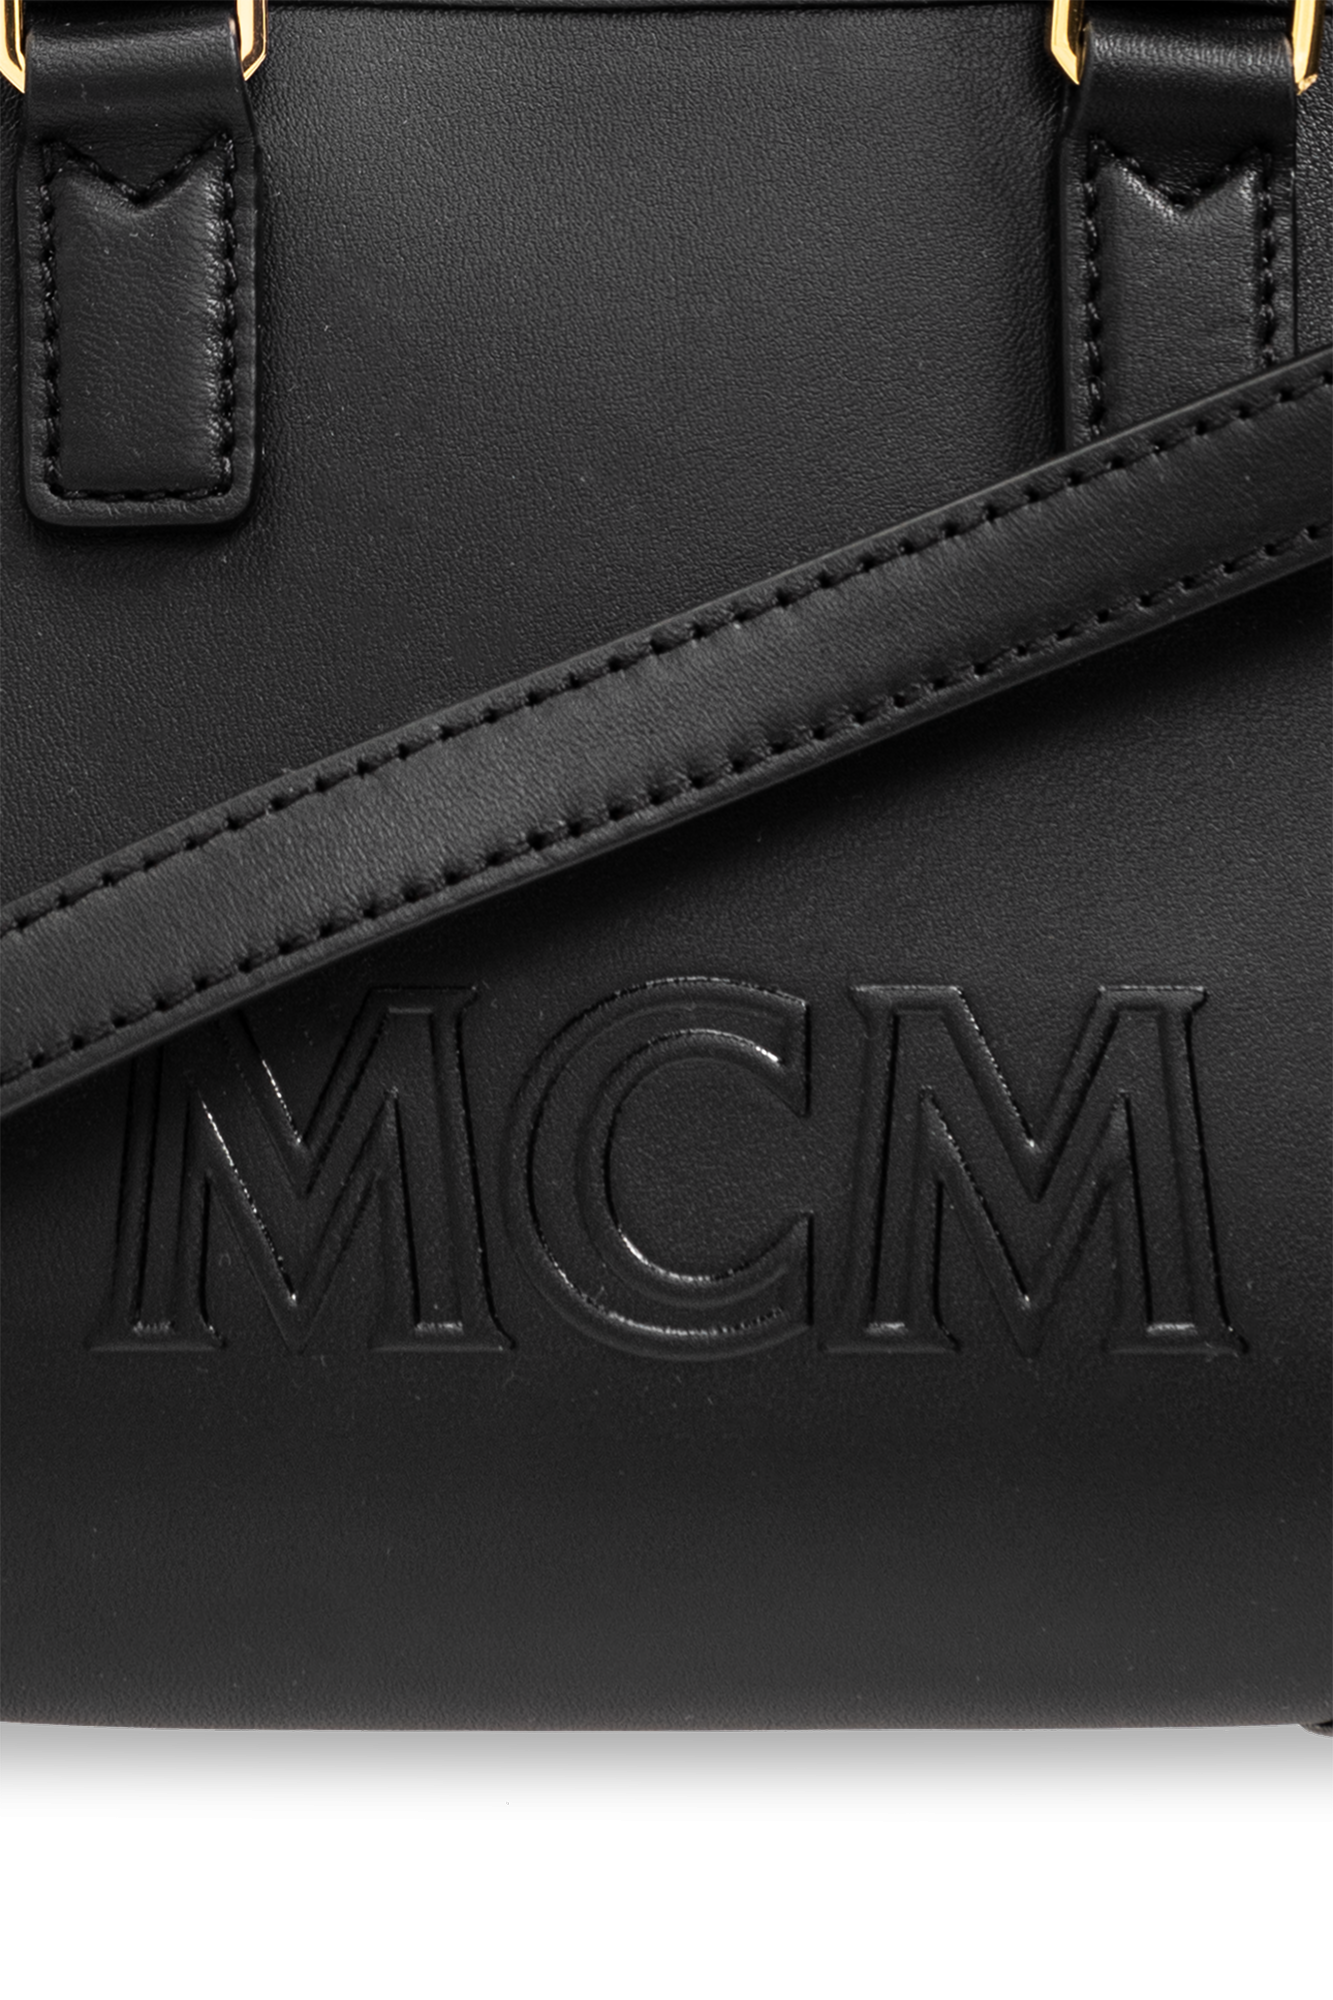 mcm mini boston bag black